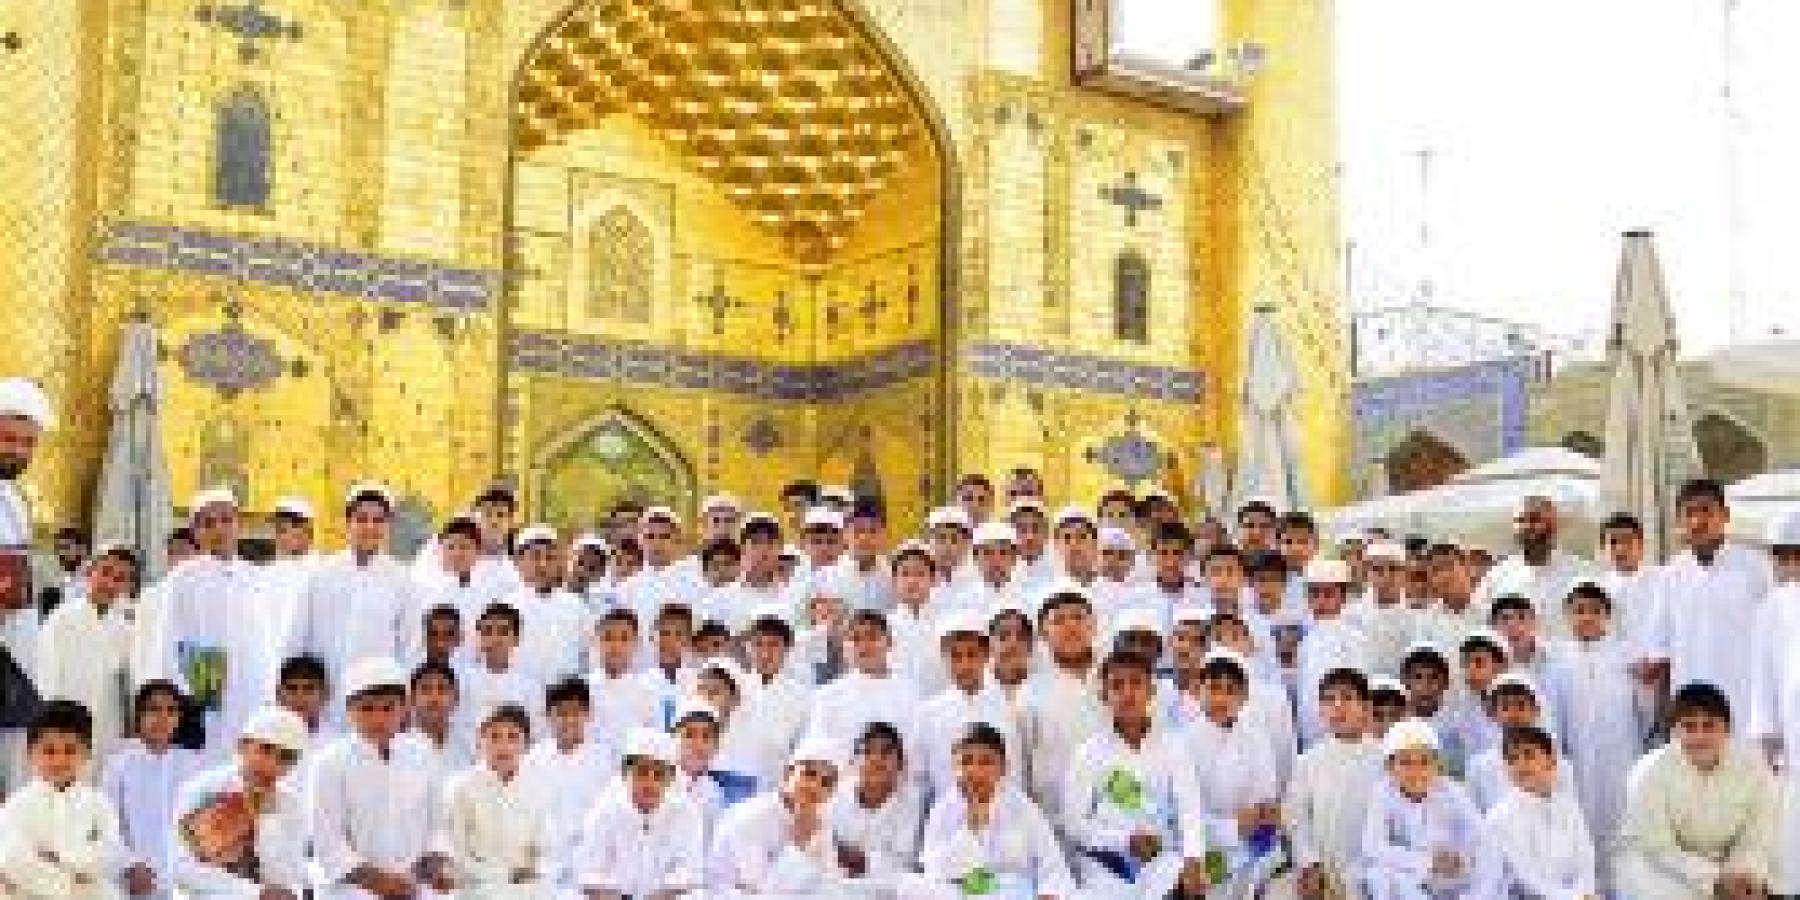 العتبة العلوية المقدسة ترعى برنامجاً قرآنياً لأكثر من 100 طالب من مدرسة الإمام الحسين (عليه السلام) القرآنية للبراعم